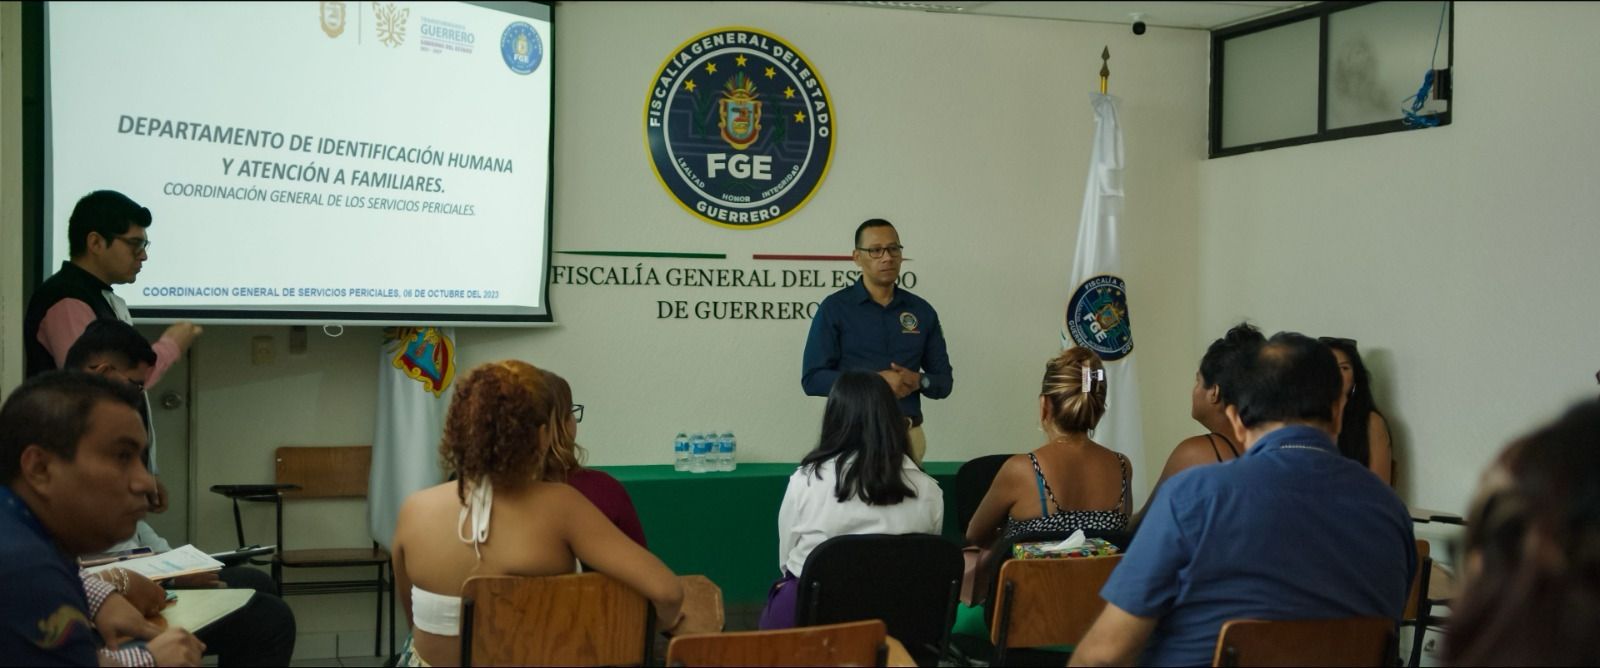 La FGE se convierte en la primera de México en contar con un protocolo de la notificación de identificación humana y entrega digna.